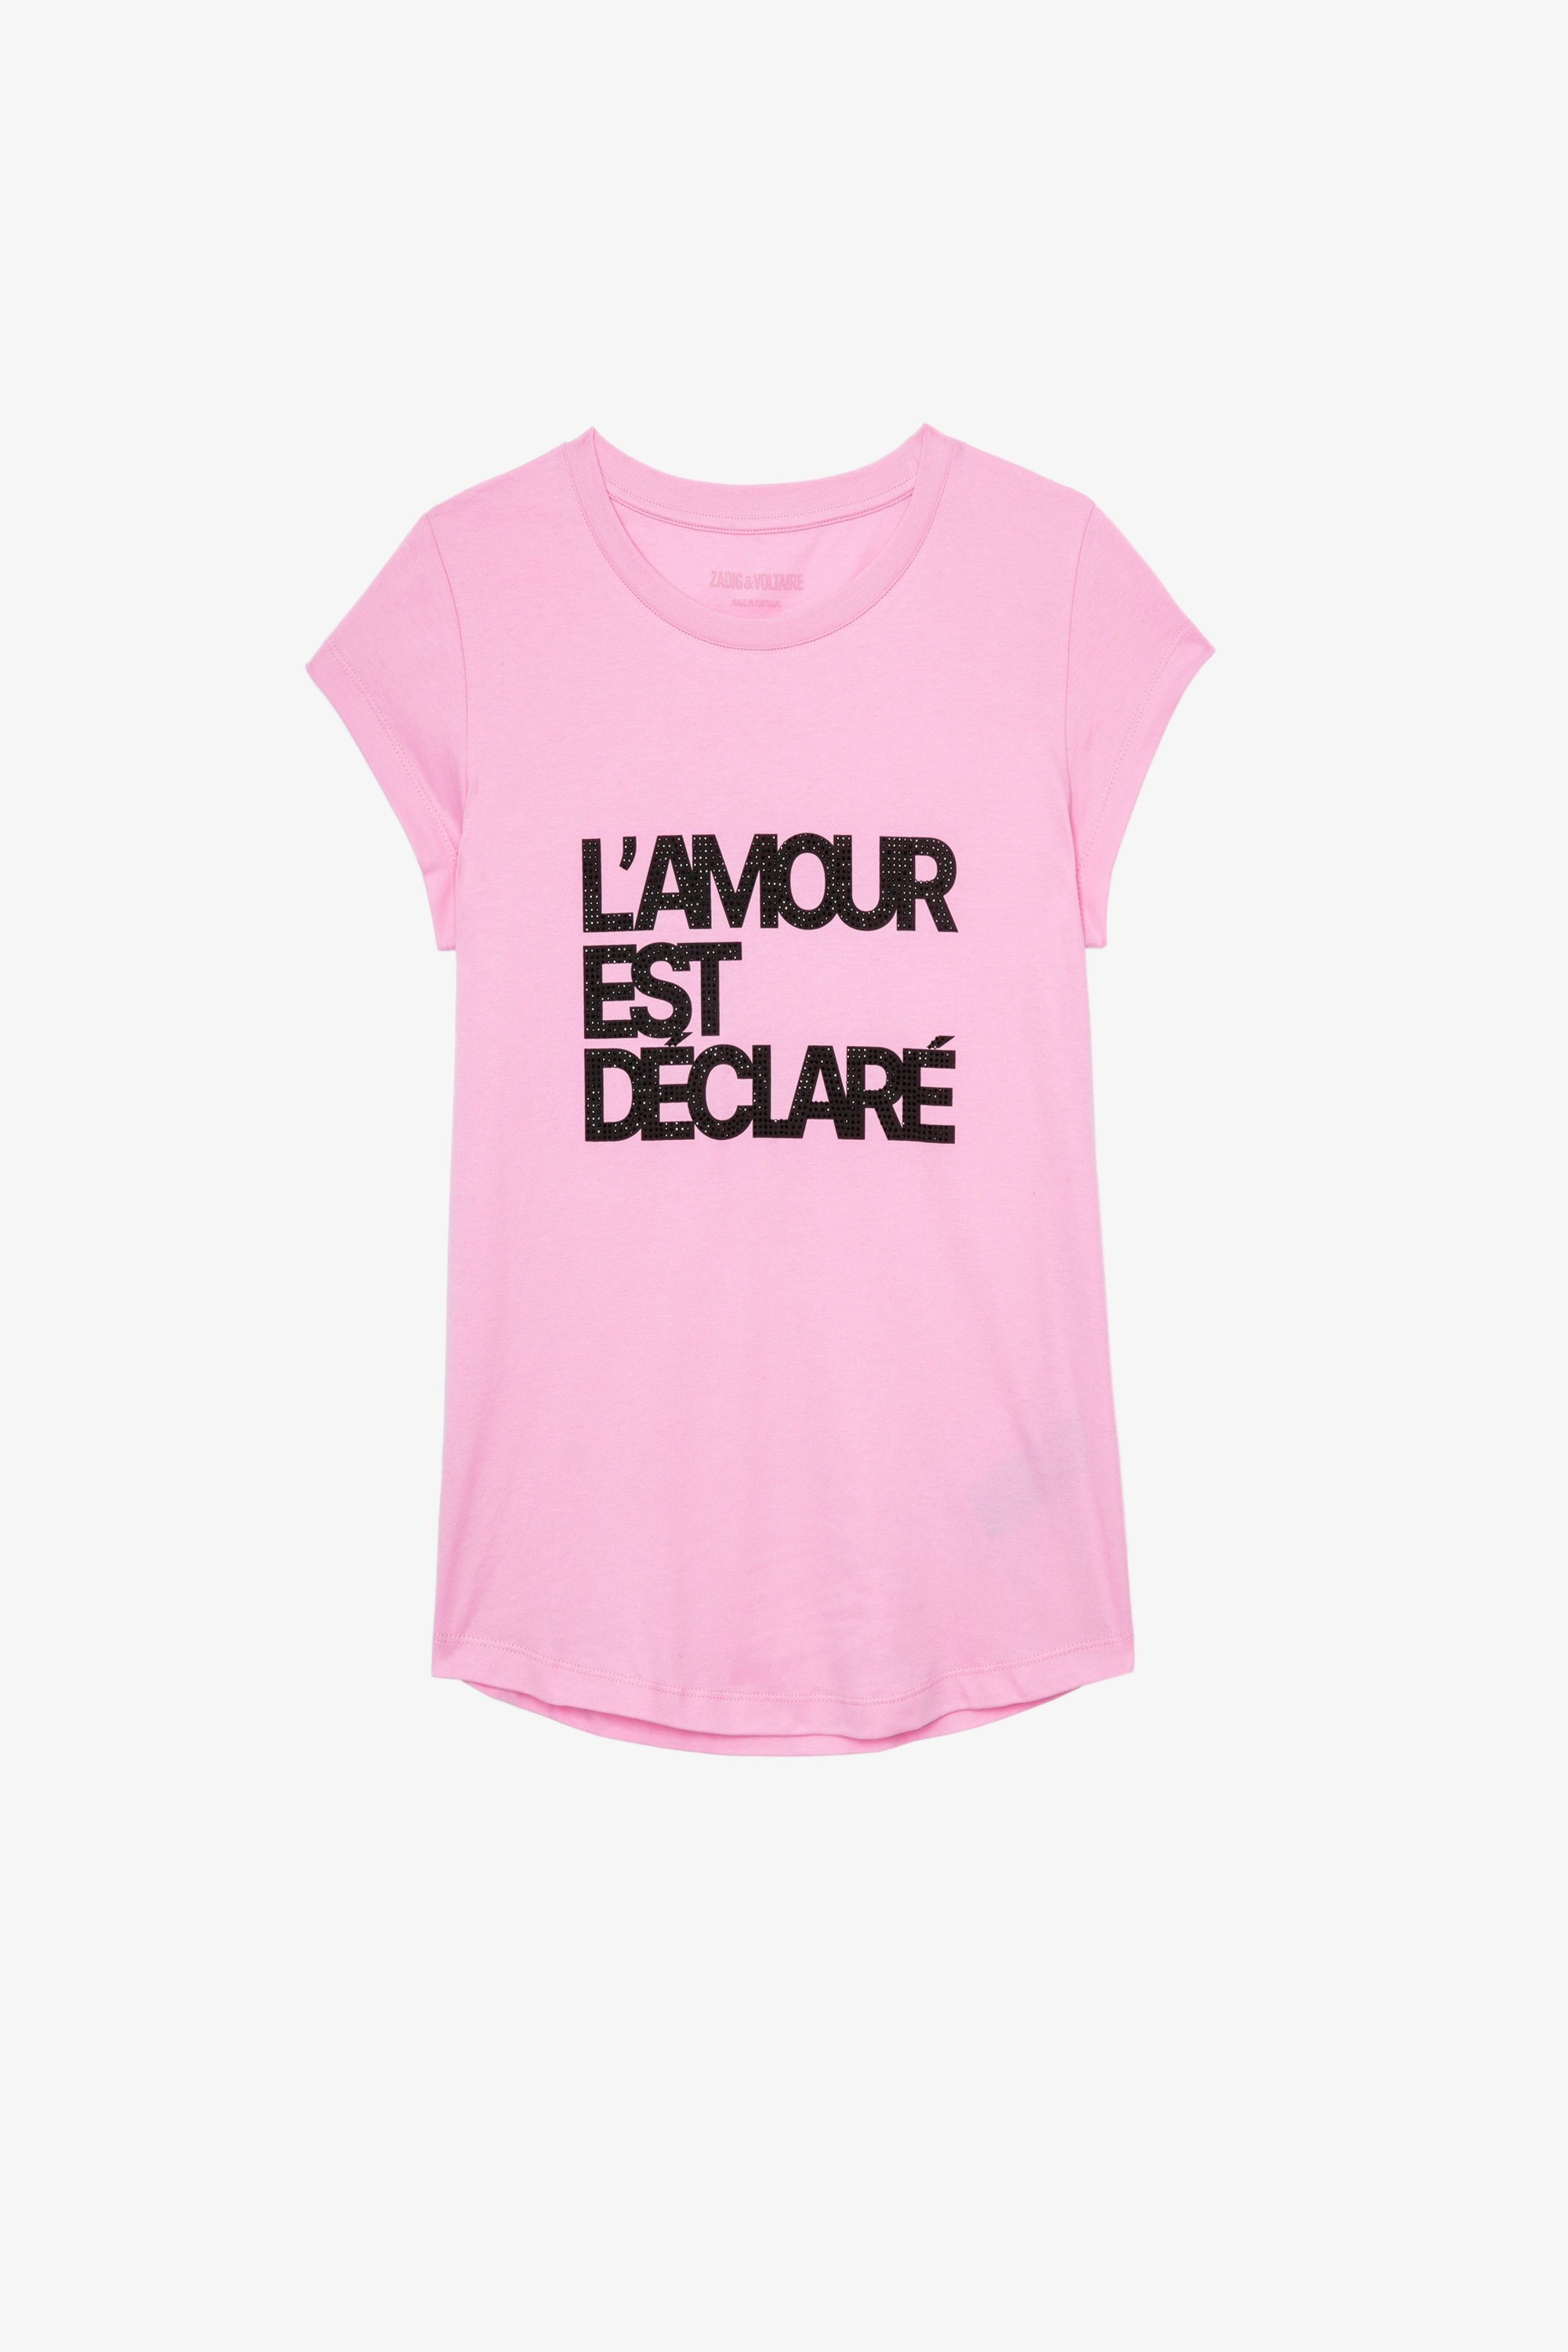 Skinny L'amour est déclaré T-shirt Women’s pink cotton T-shirt with diamanté “Love is declared” appliqué